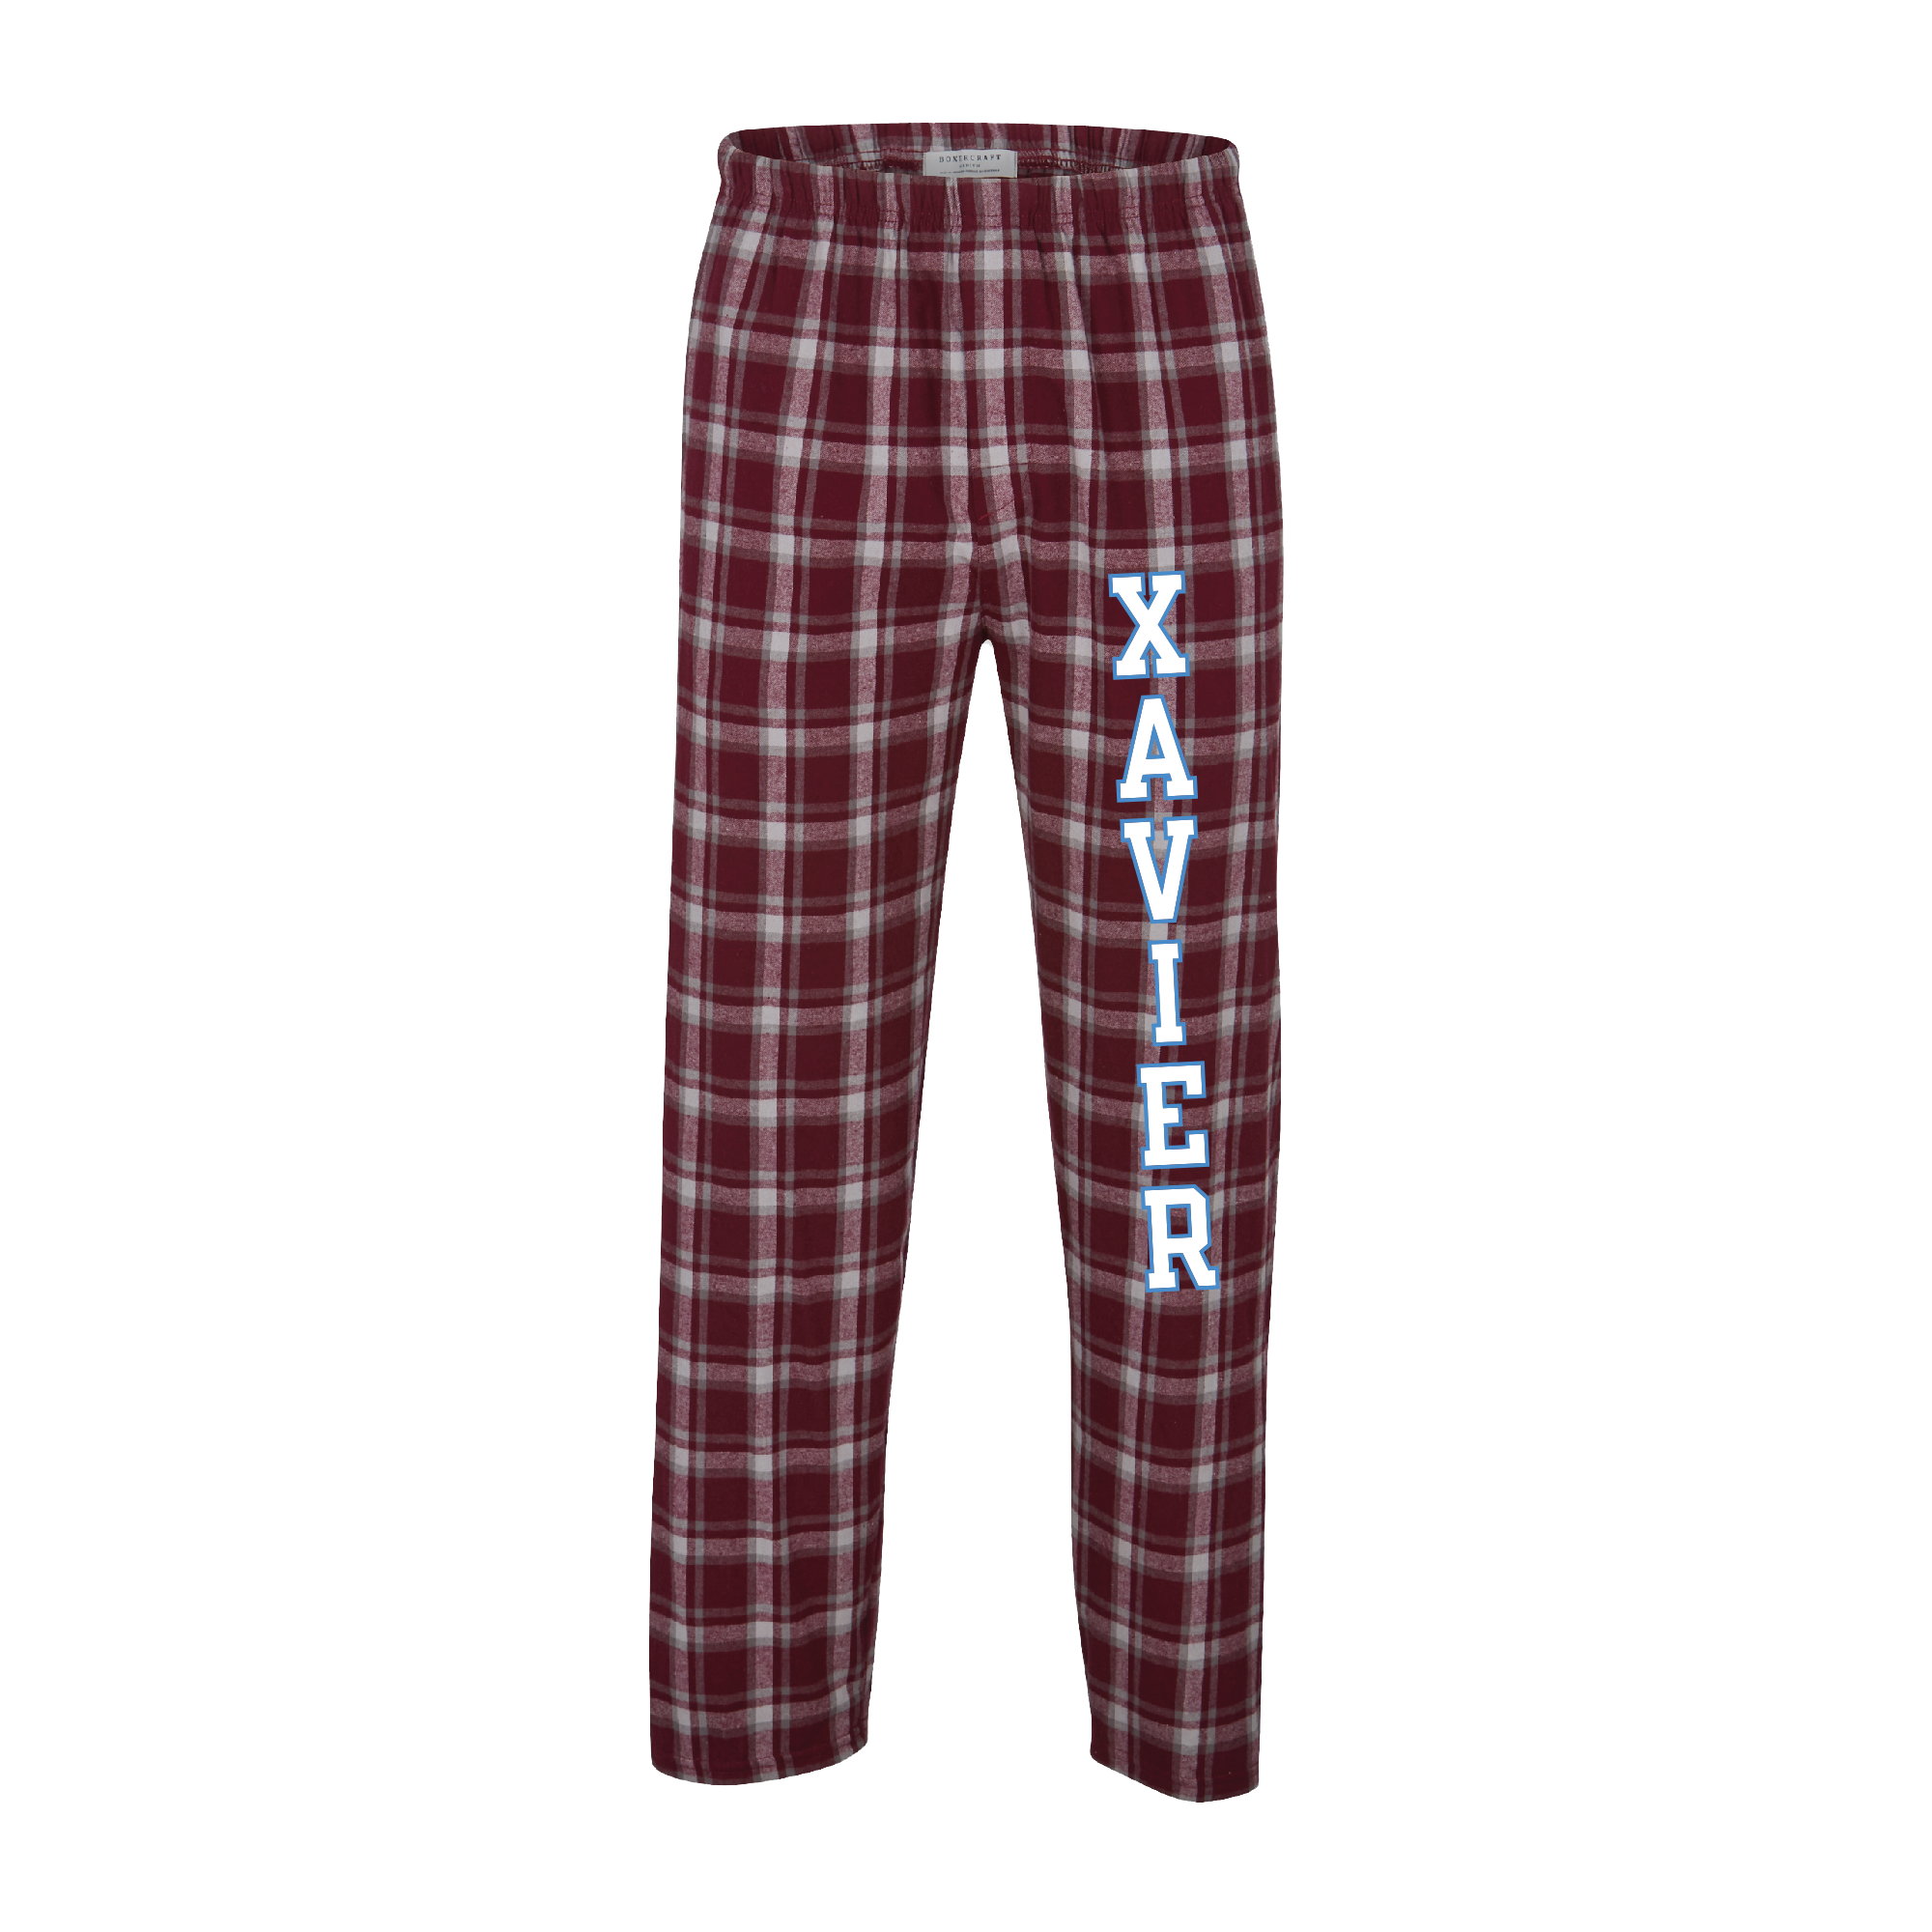 Xavier Pajama Bottoms